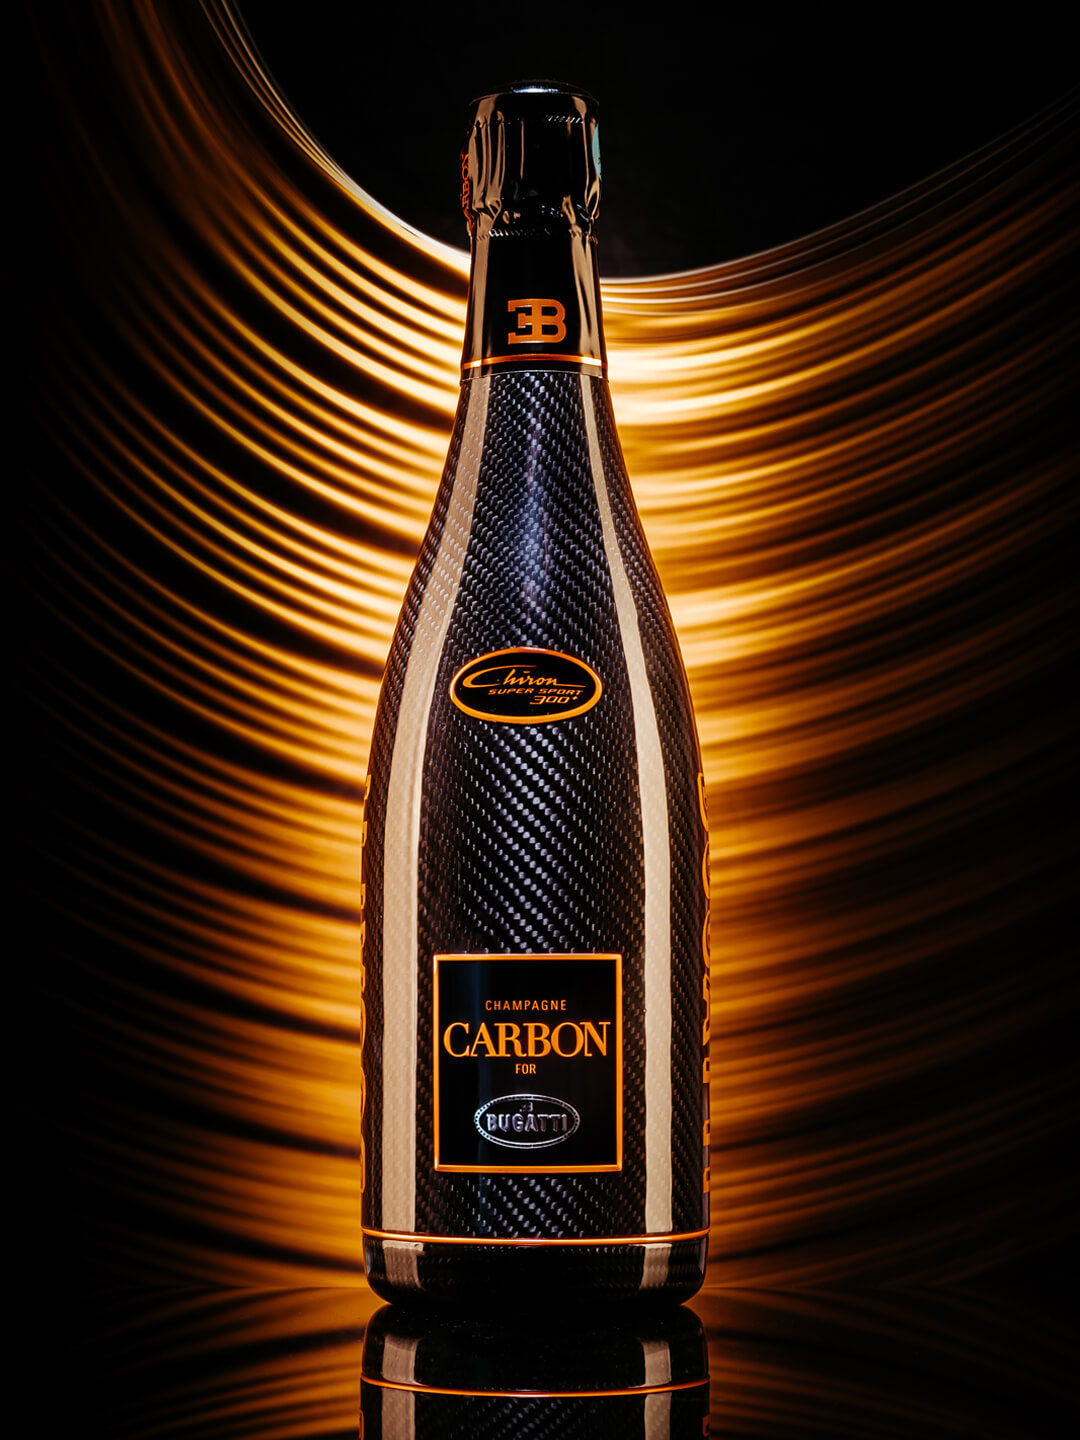 USA Bugatti Collection – Carbon Champagne